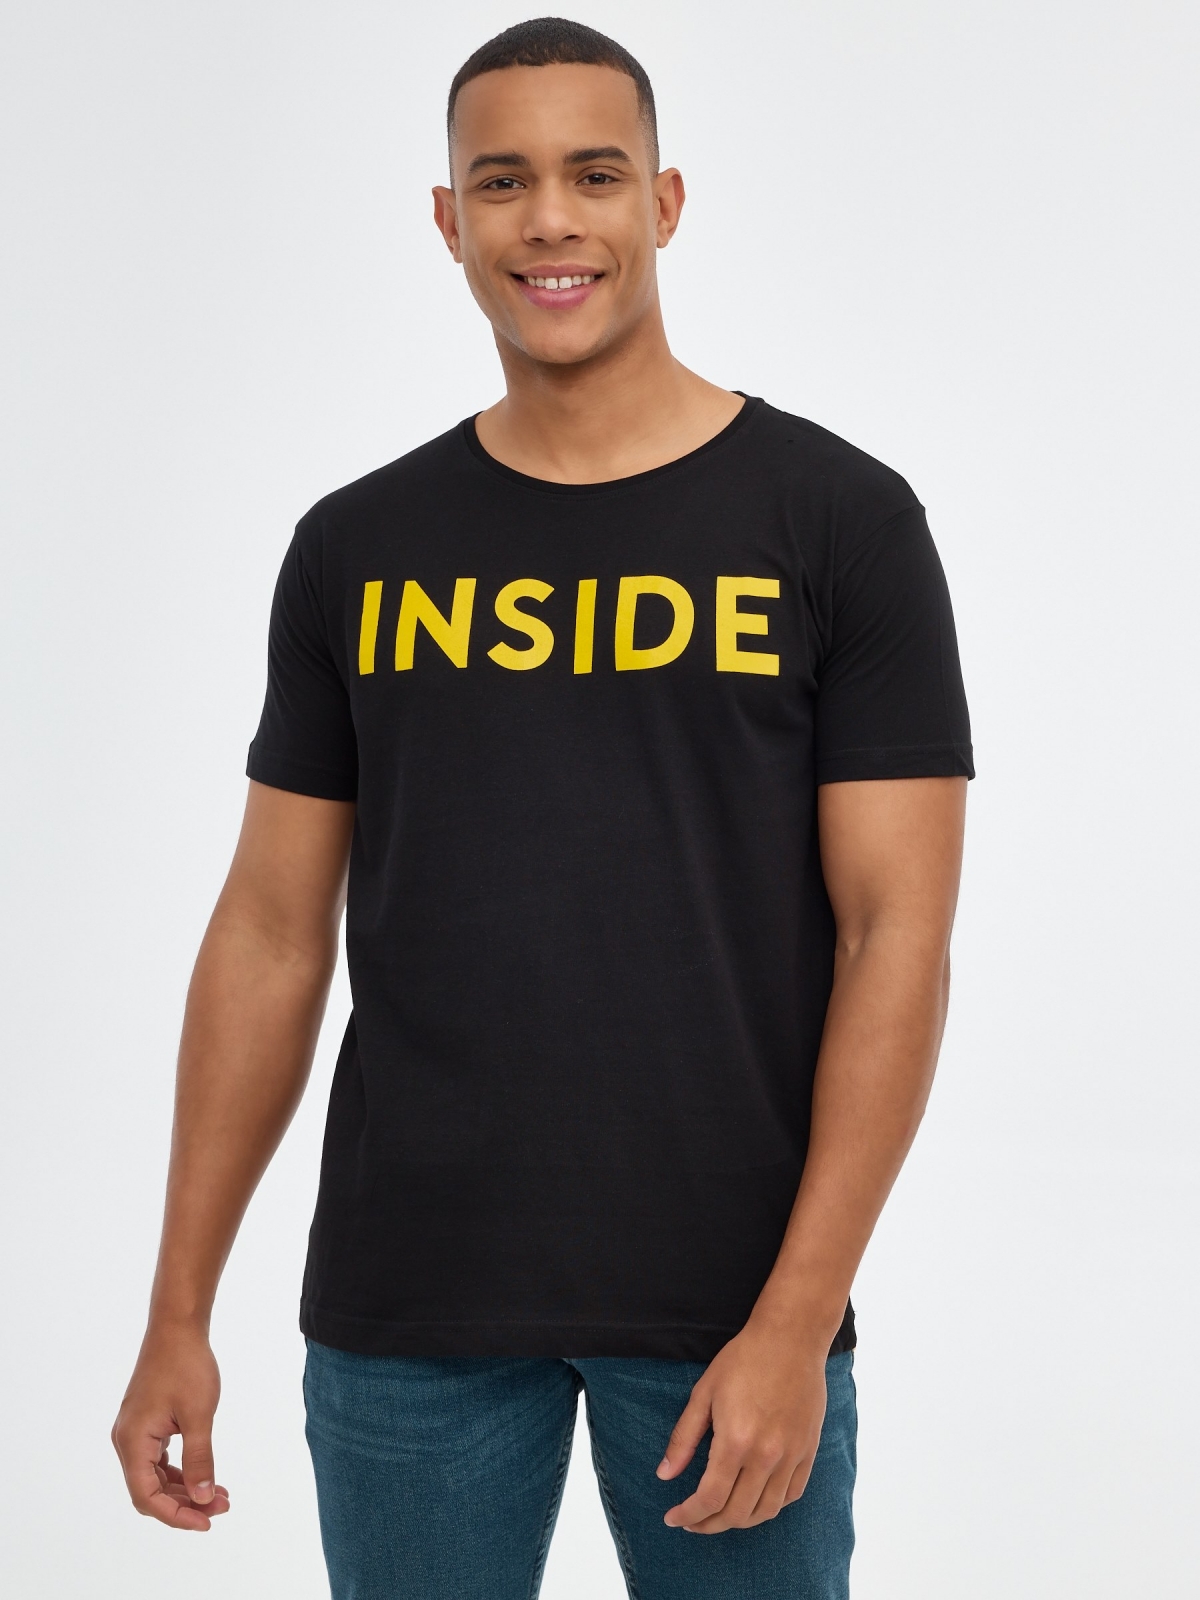 Camiseta básica "INSIDE" negro vista media frontal